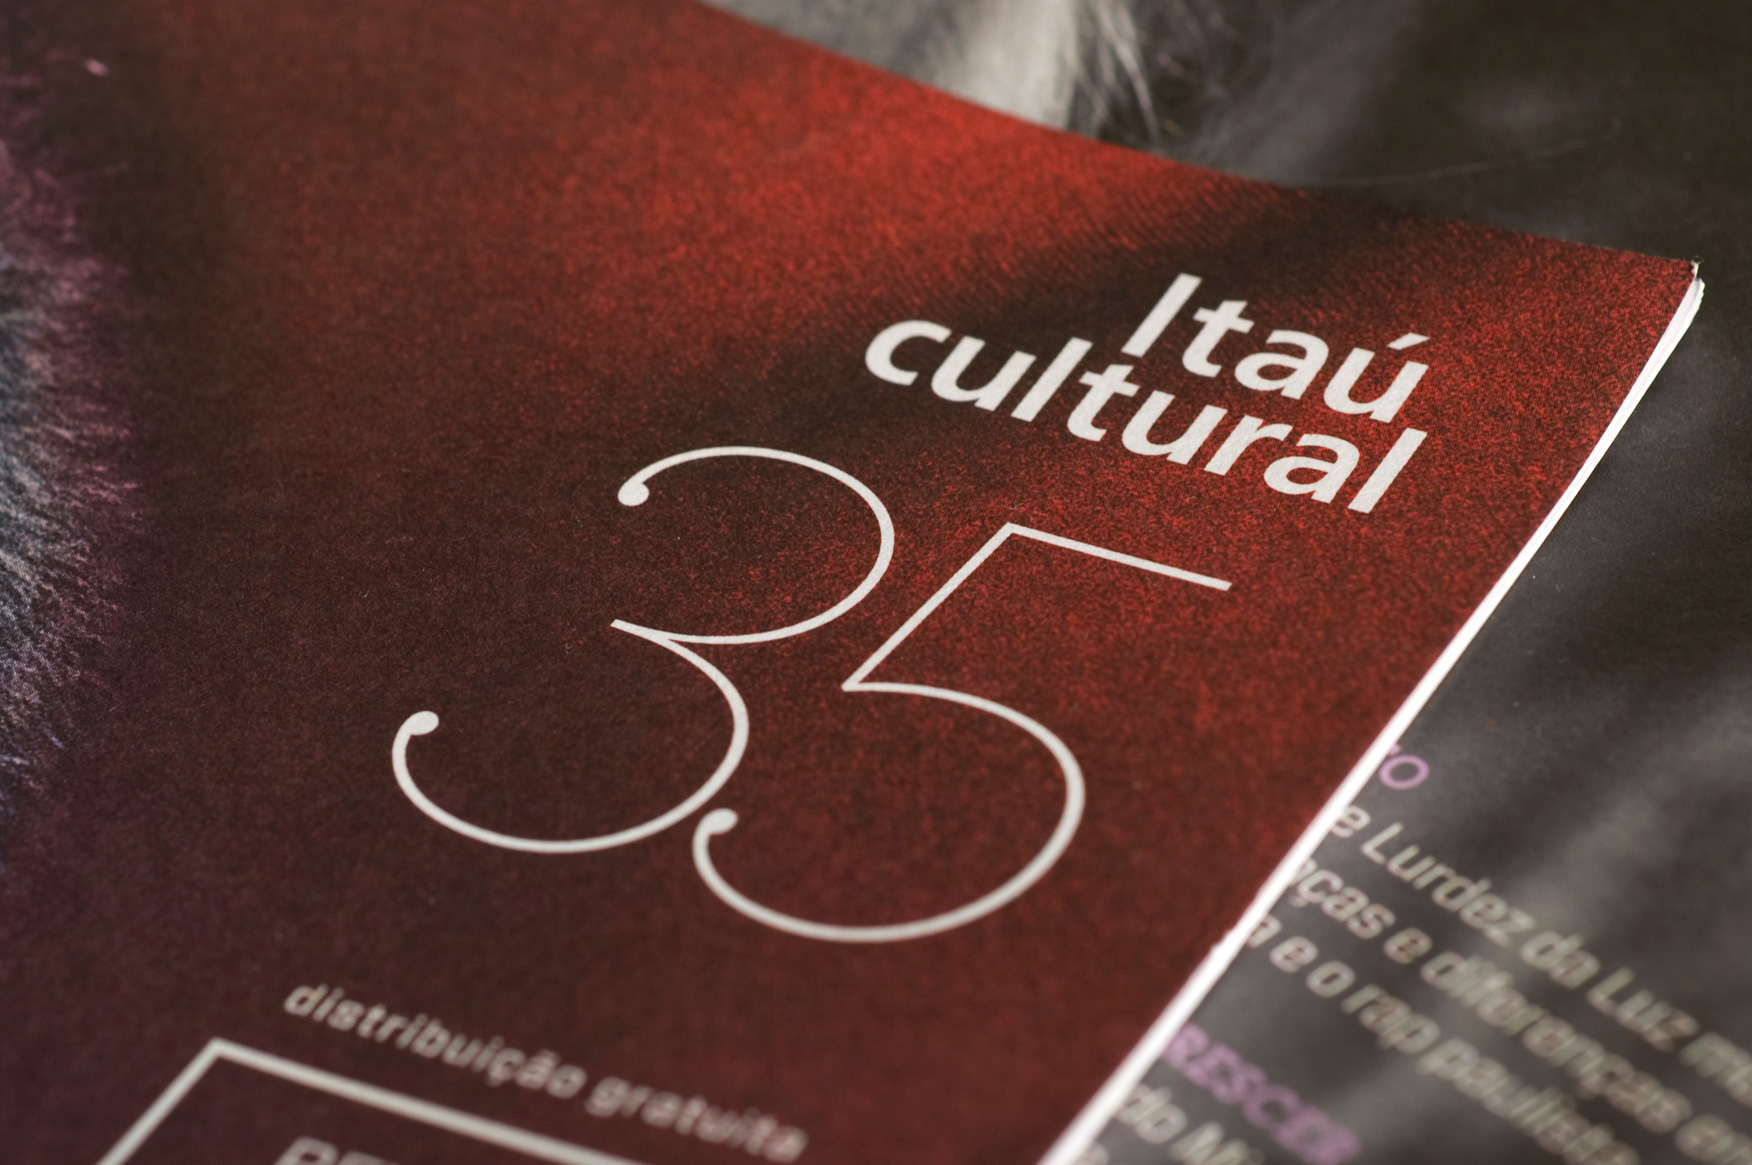 Revista Continuum 35 | capa (detalhe)